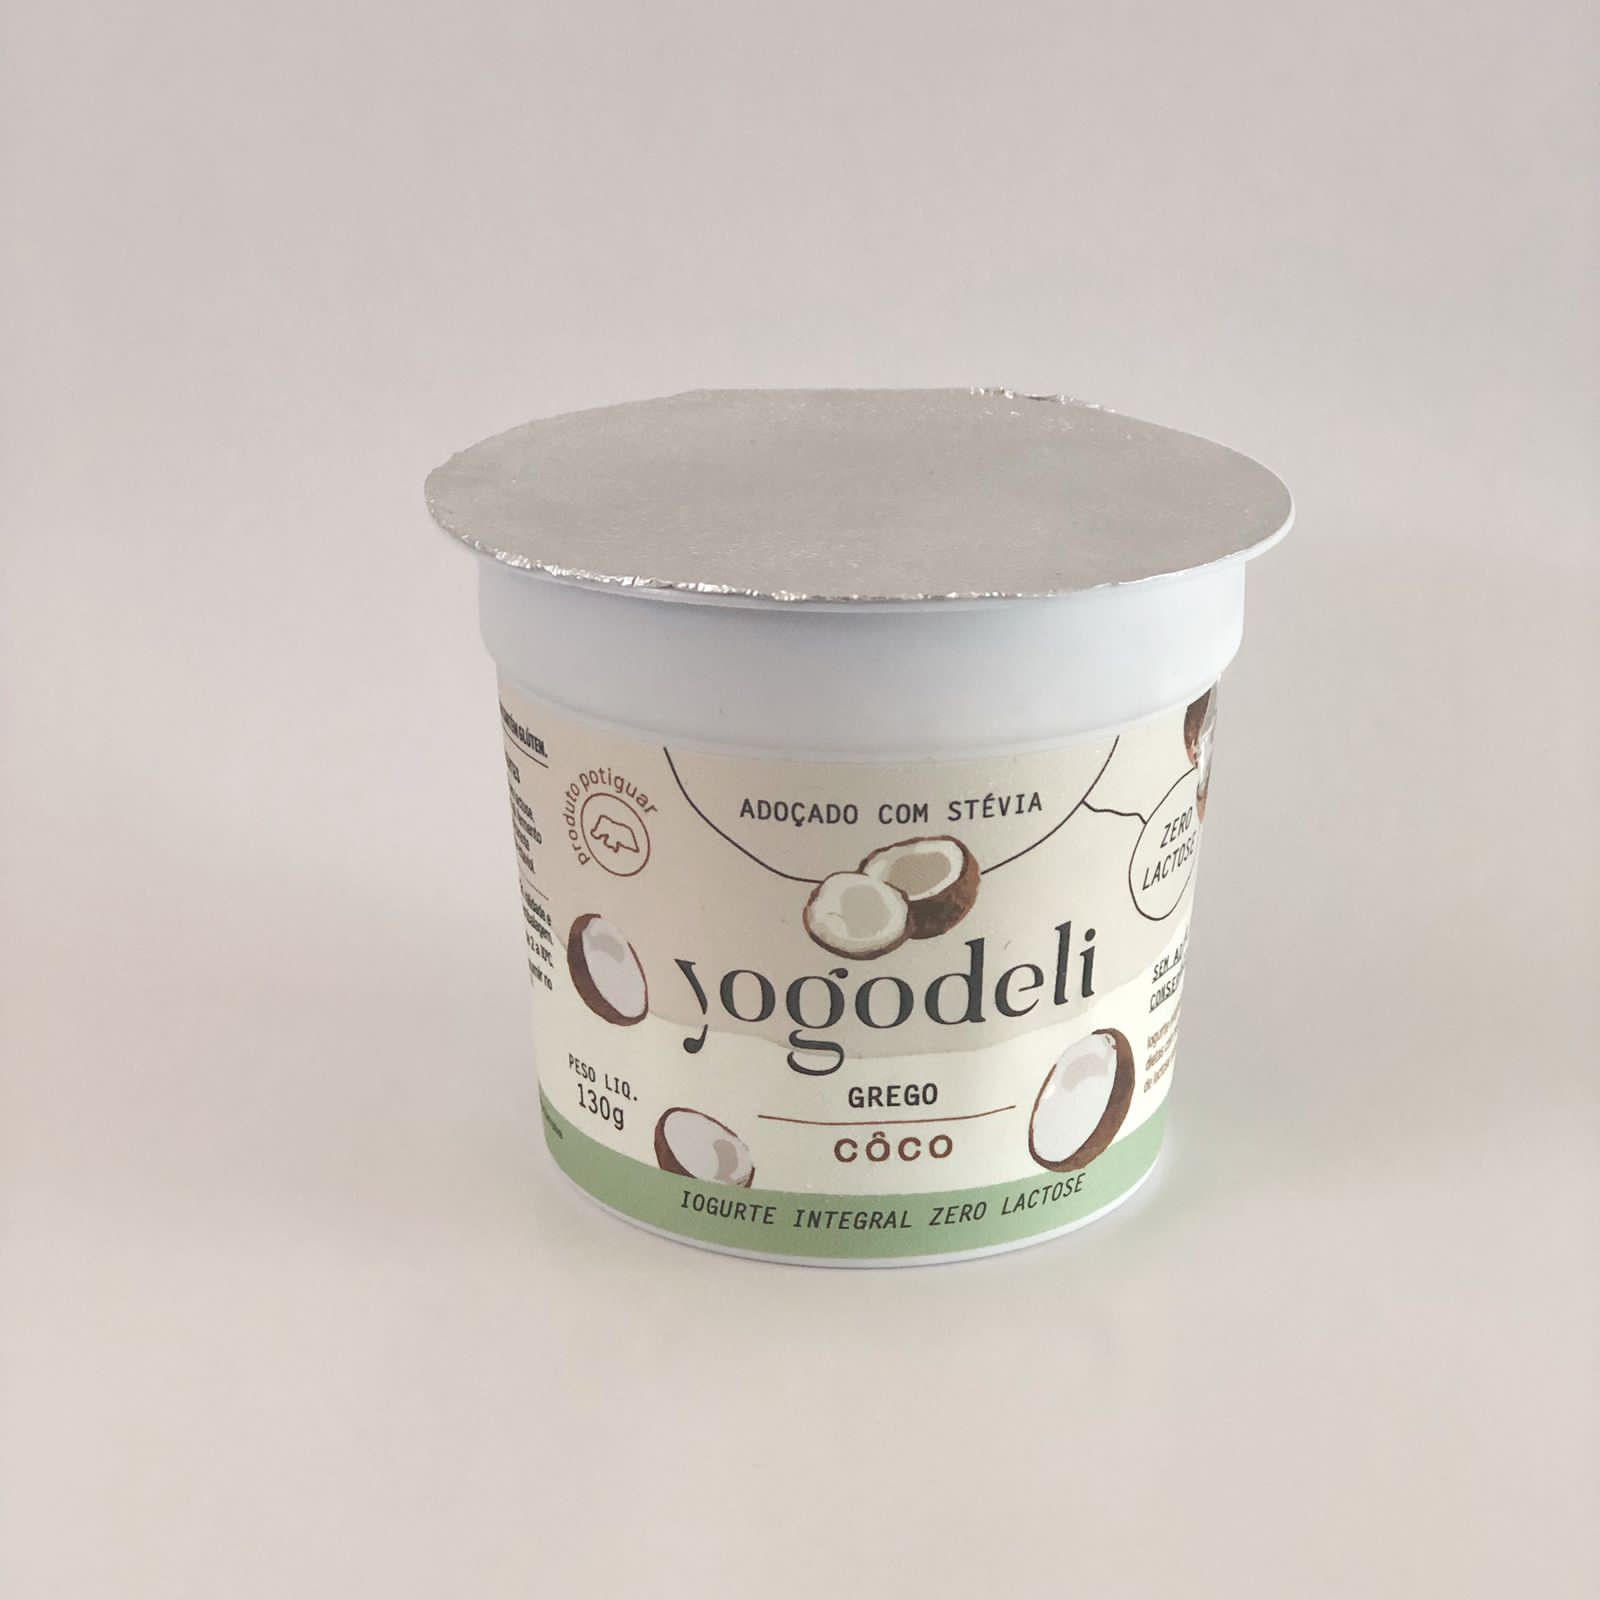 iogurte grego zero lactose coco - yogodeli